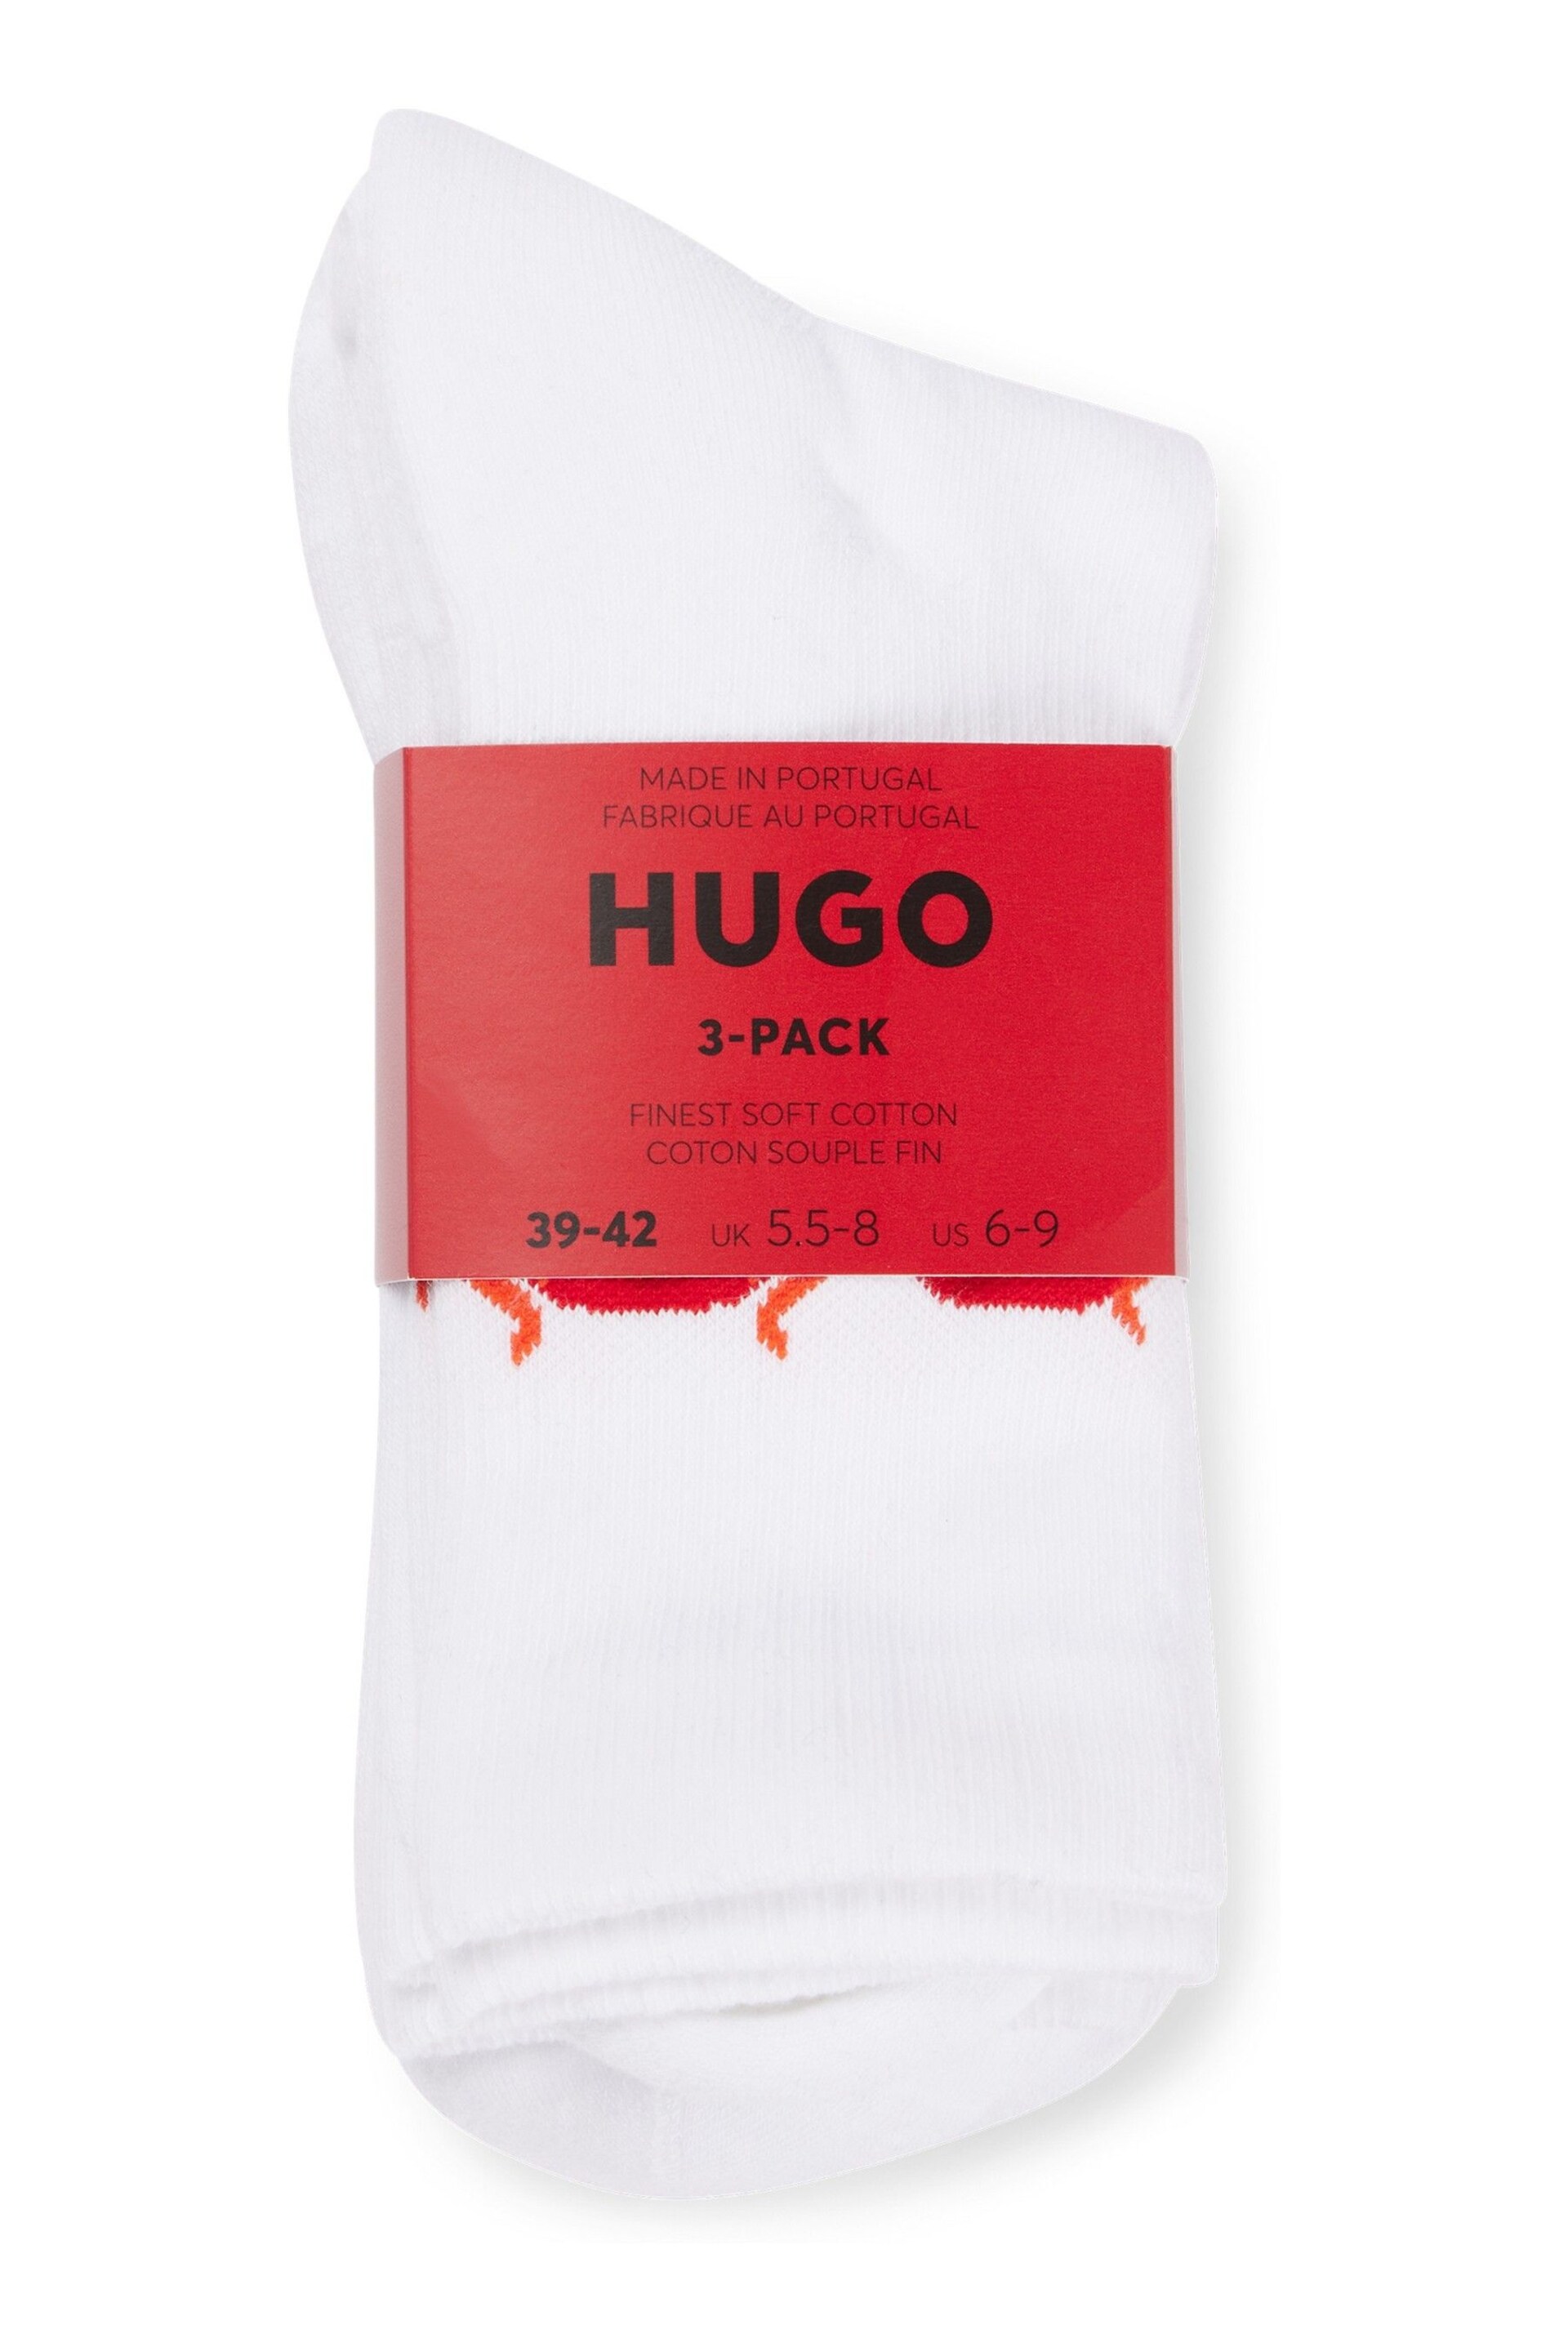 HUGO Regular Length Flame Logo White Socks 3 Pack - Image 2 of 3